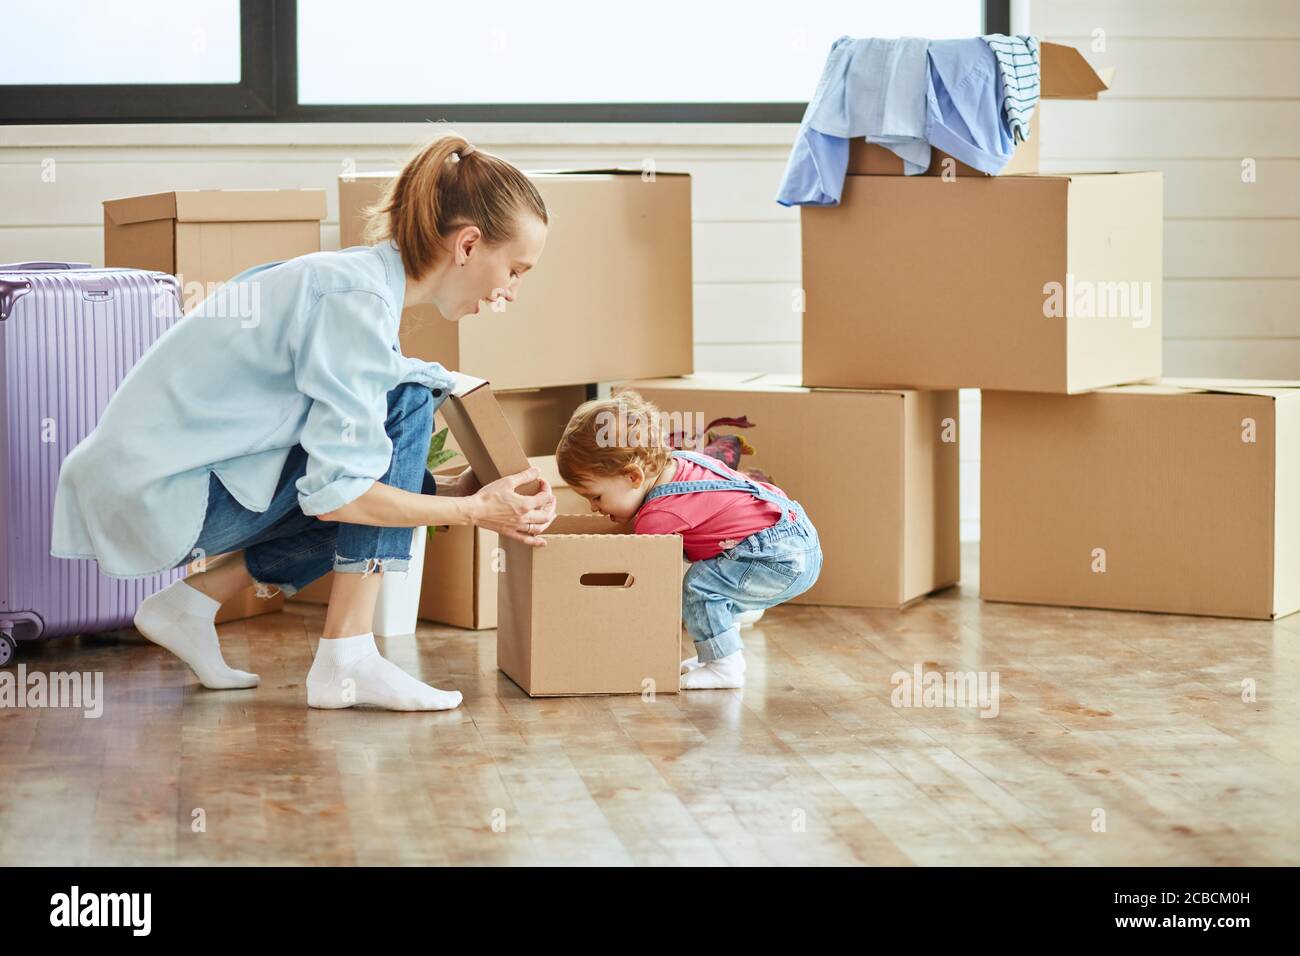 In der Mitte Foto kleines Kind sieht in der Box. Mutter blonde Frau tragen blaues Hemd, Jeans und weiße Socken Lächeln und schauen Tochter. Hintergrund bewegt bo Stockfoto